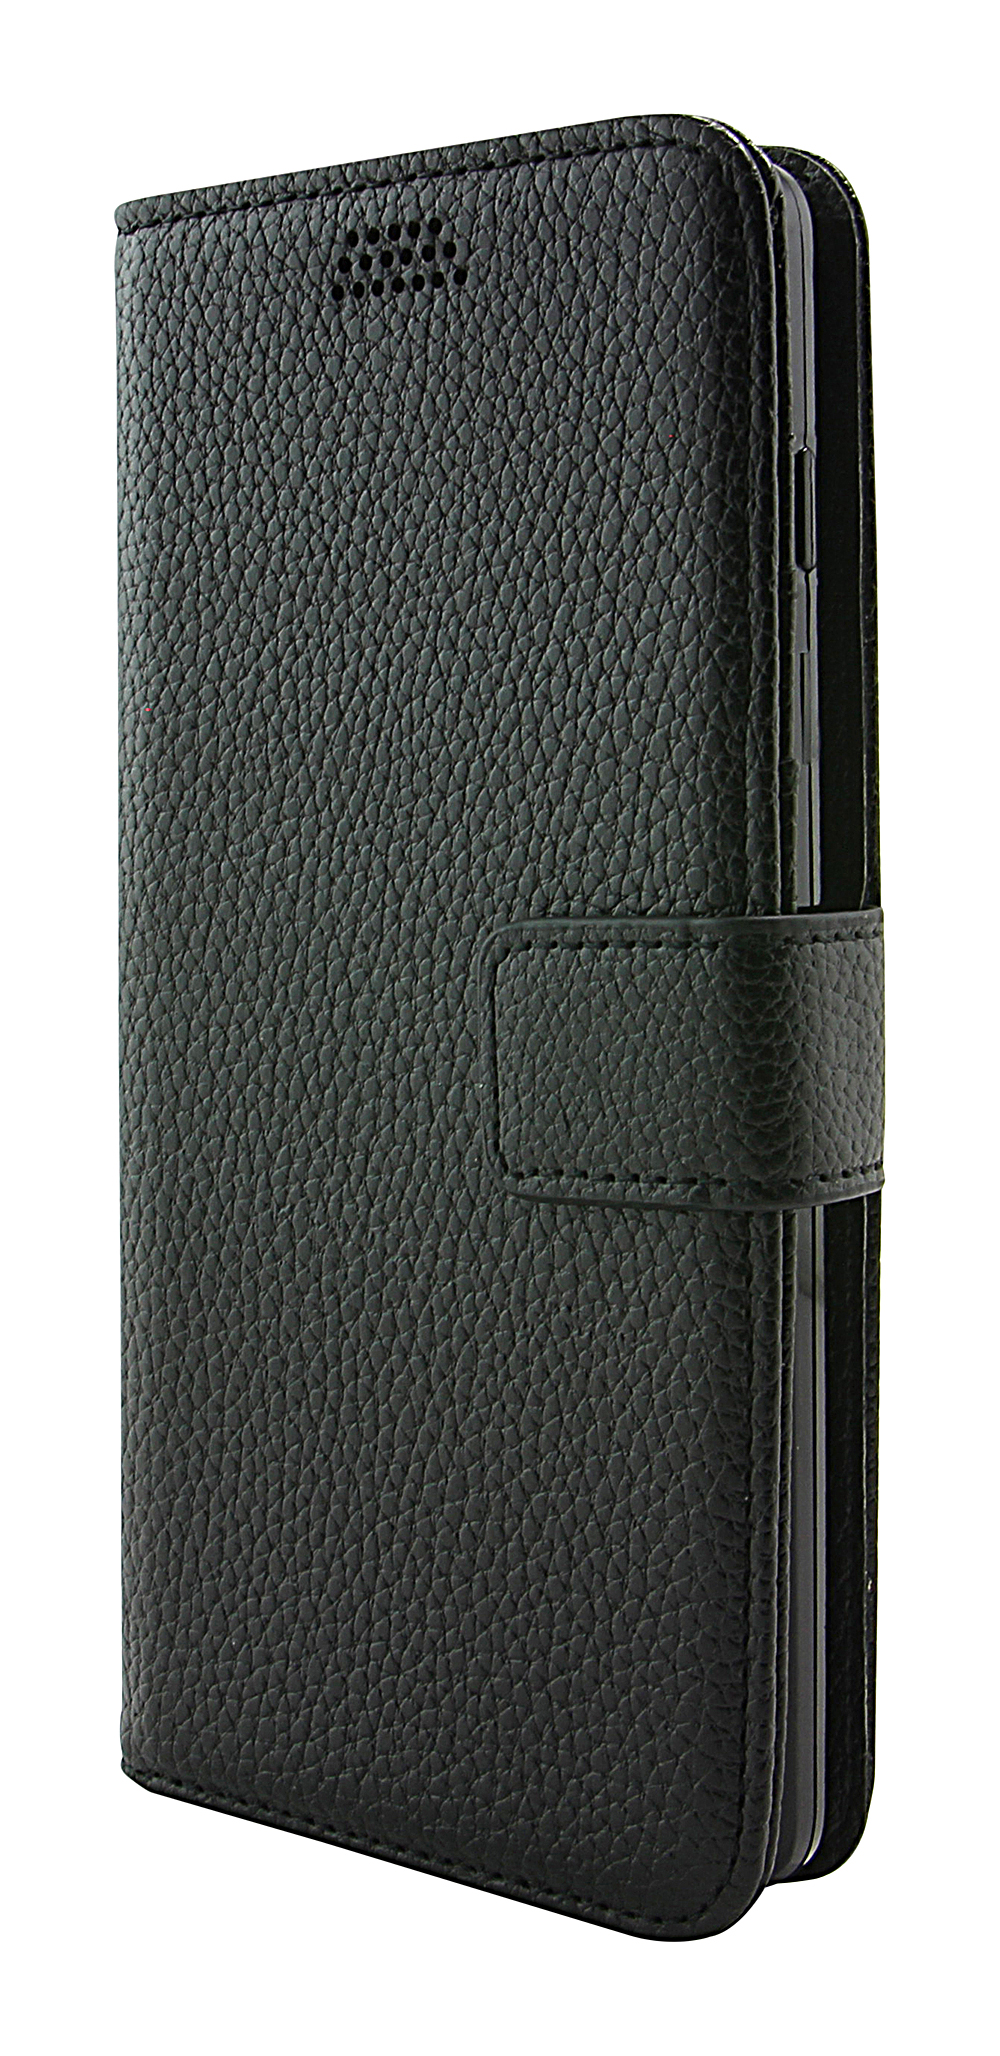 New Standcase Wallet Sony Xperia XZ / XZs (F8331 / G8231)